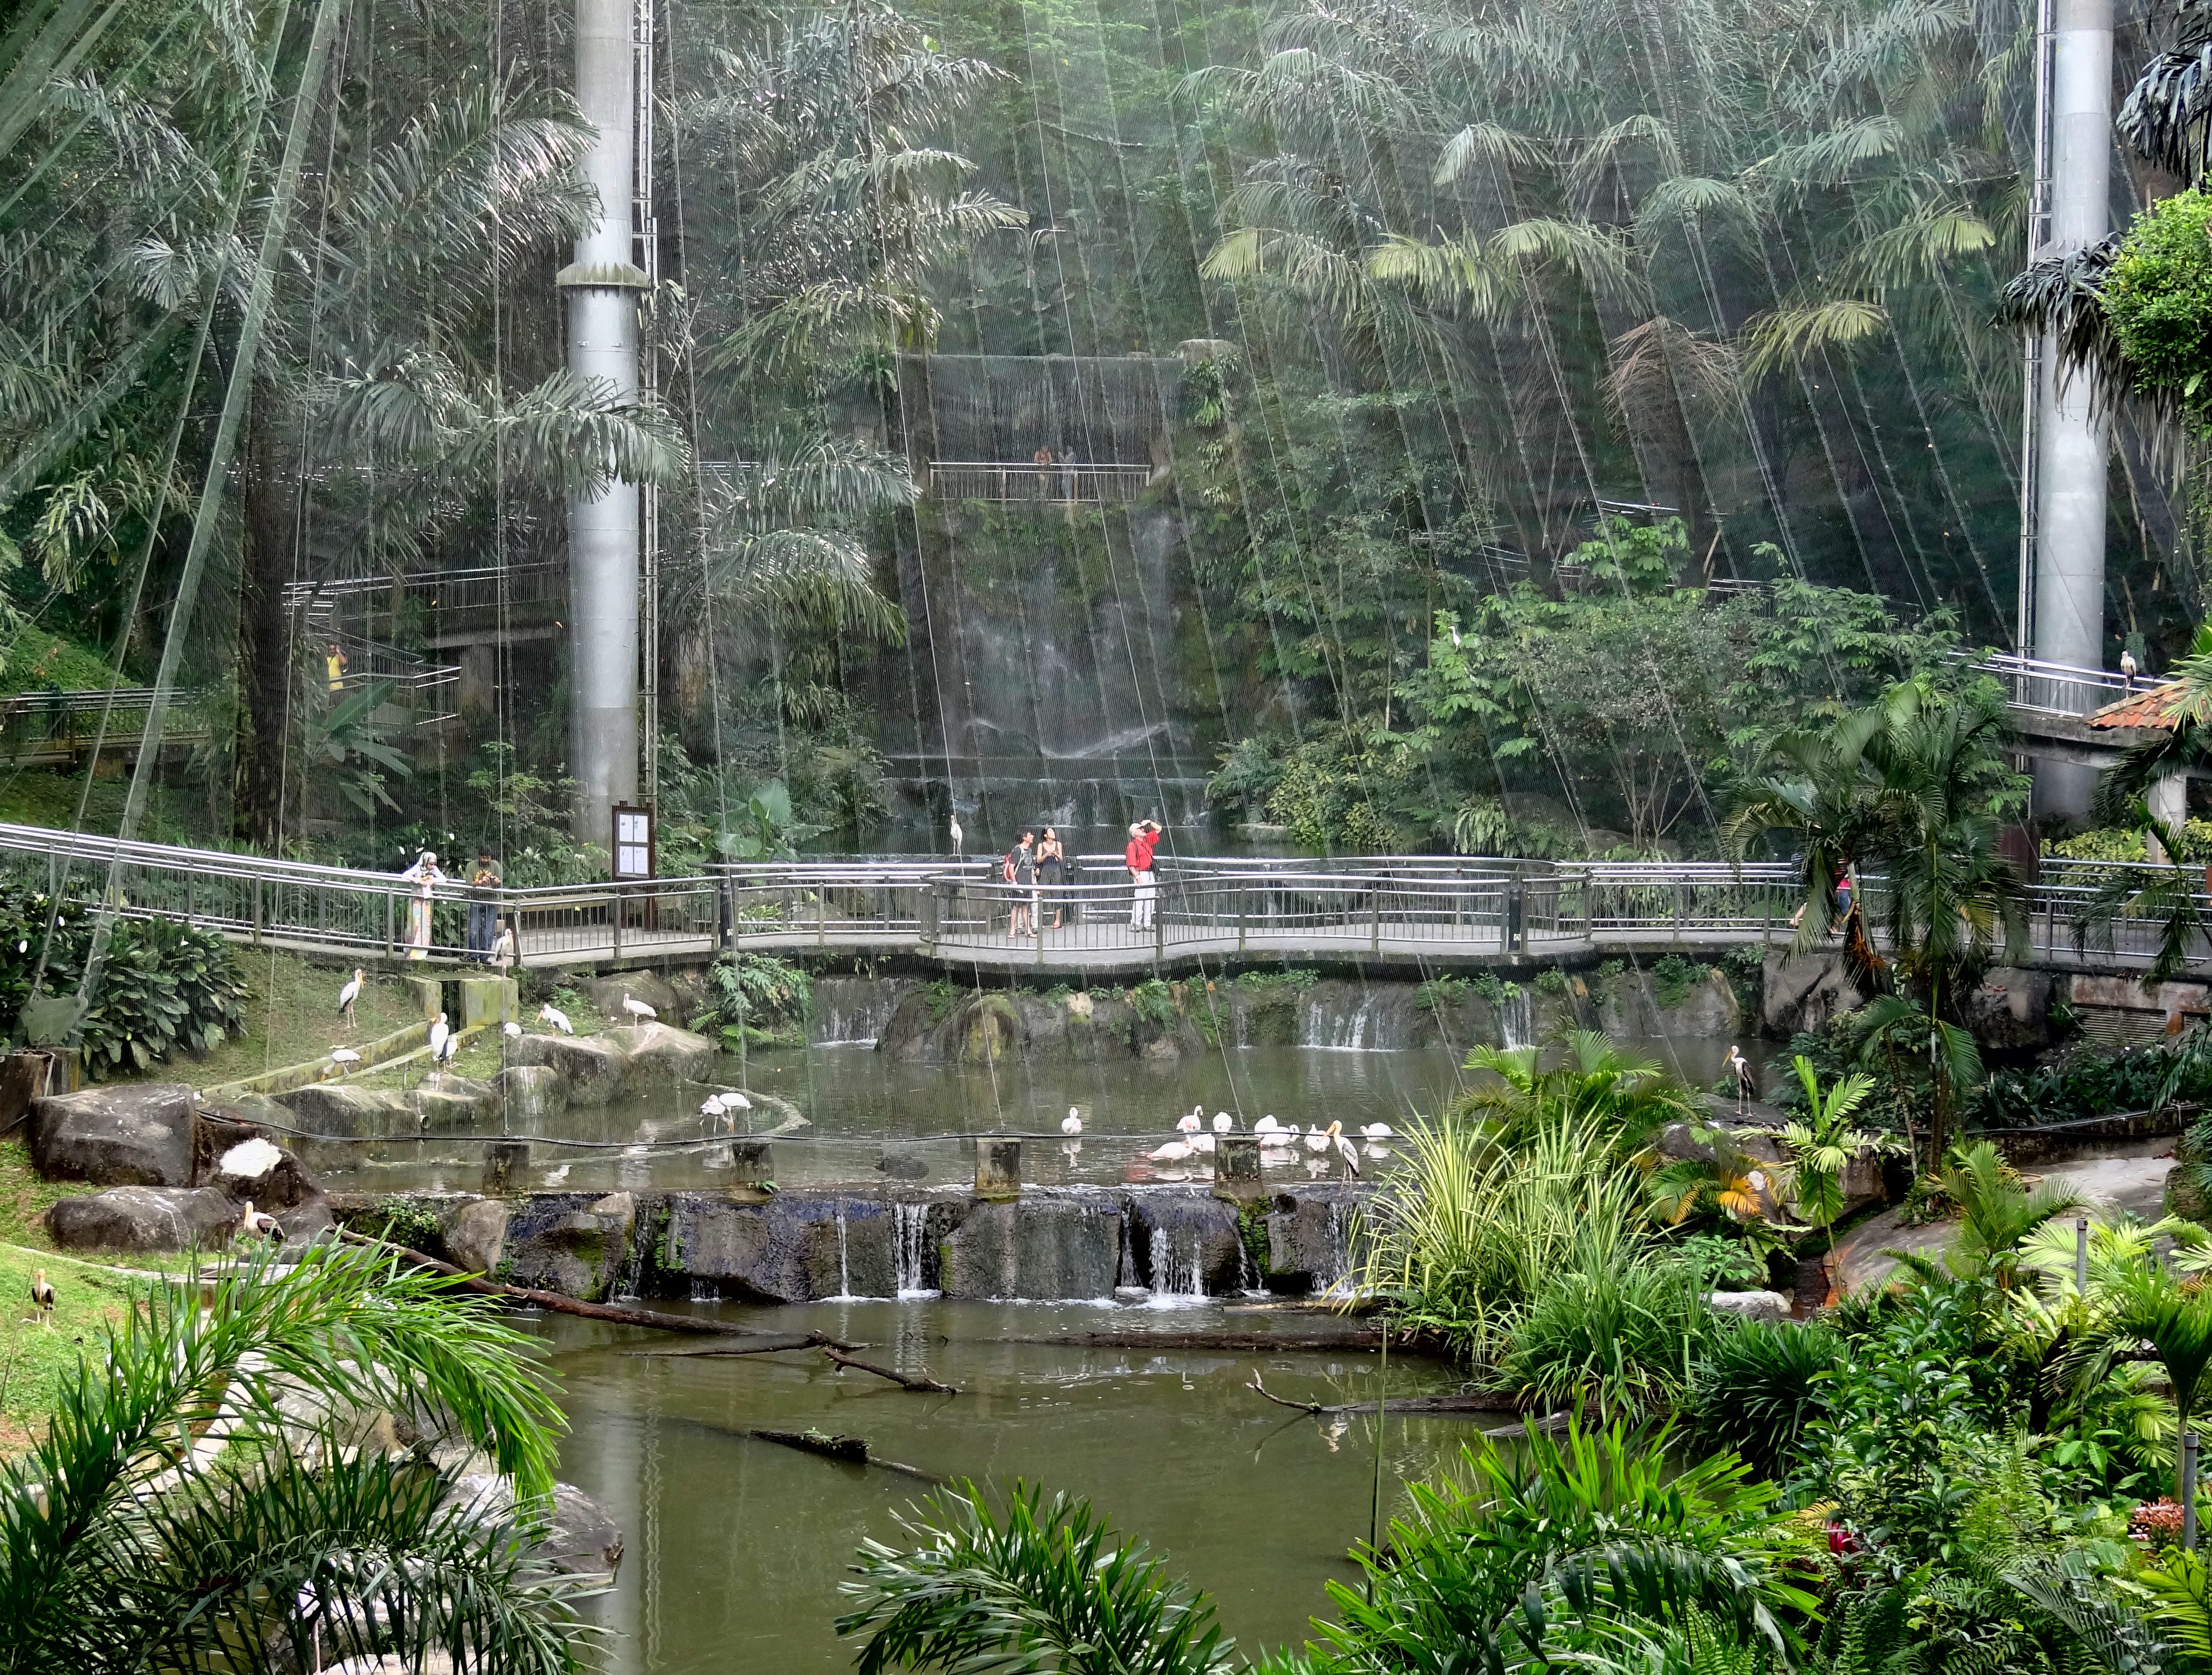 Kuala lumpur bird park